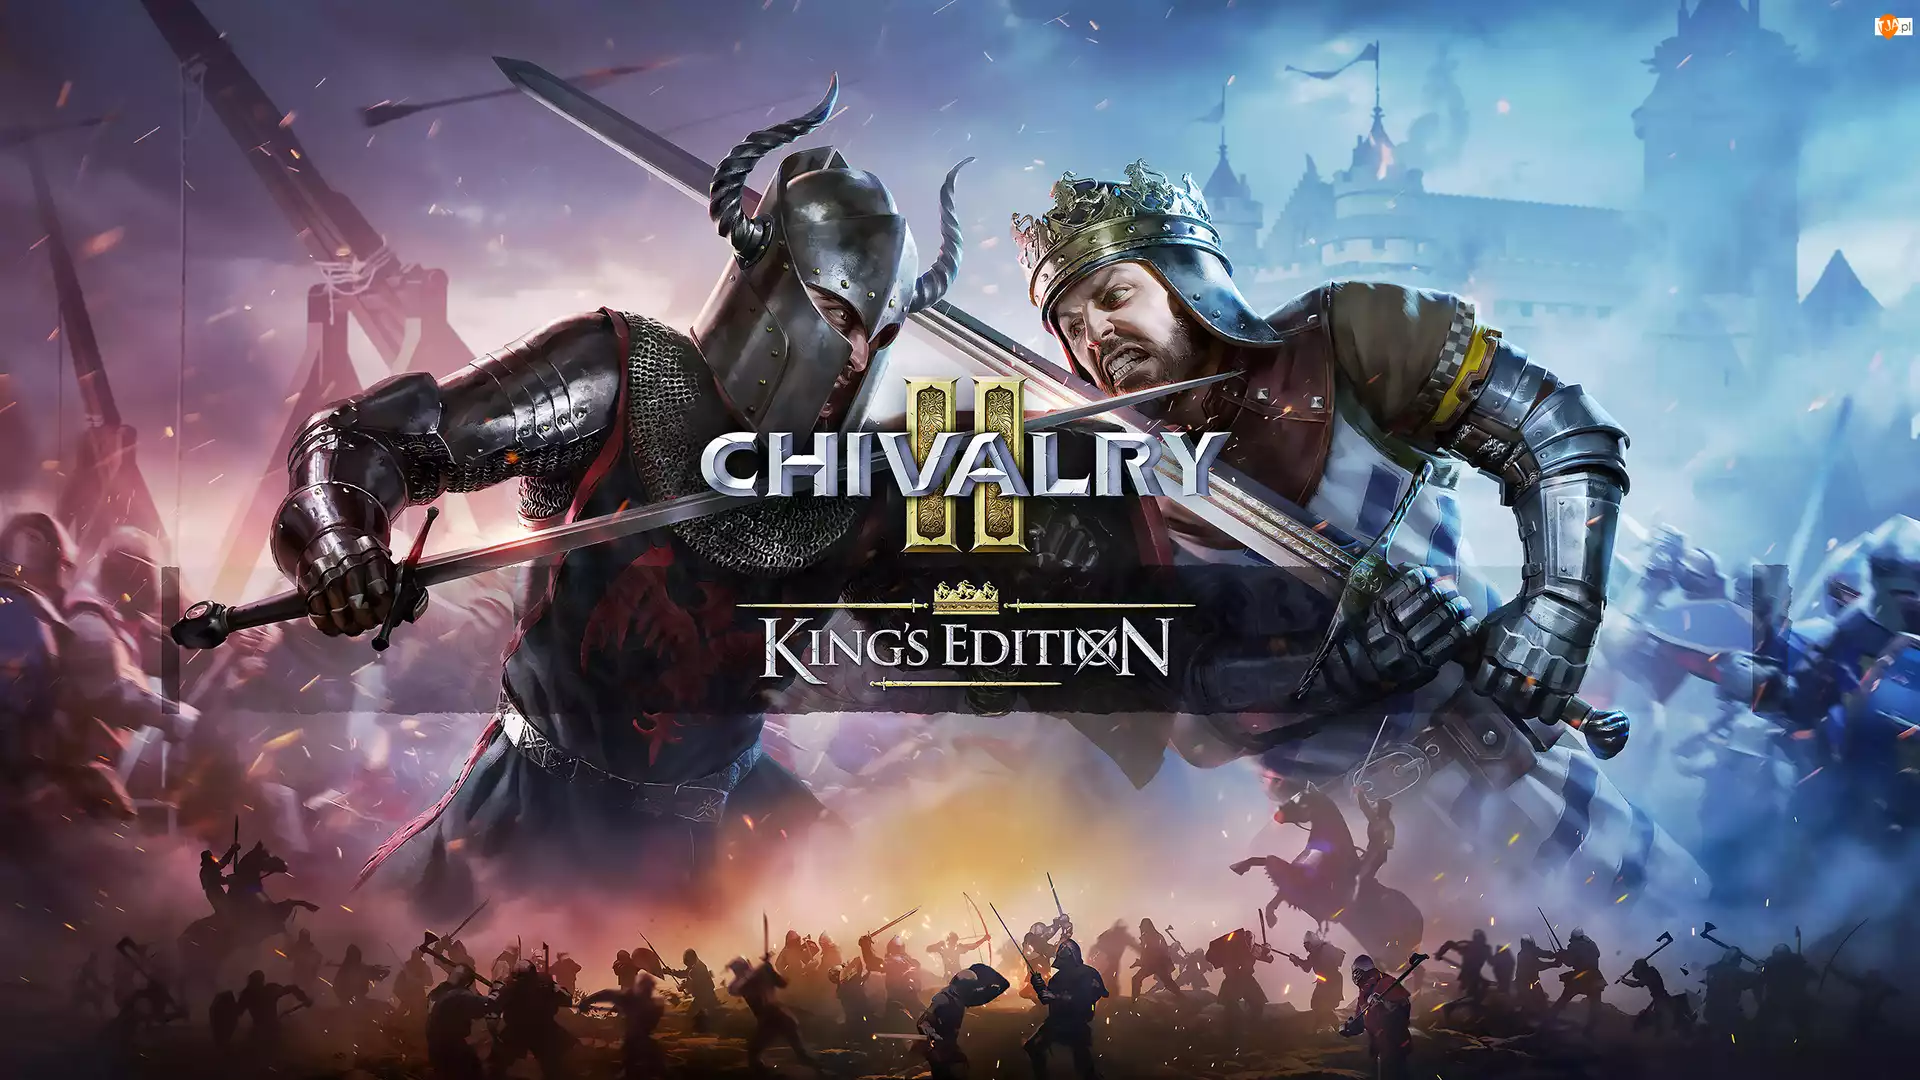 Chivalry 2 Kings Edition, Rycerz, Plakat, Gra, Walka, Miecze, Król